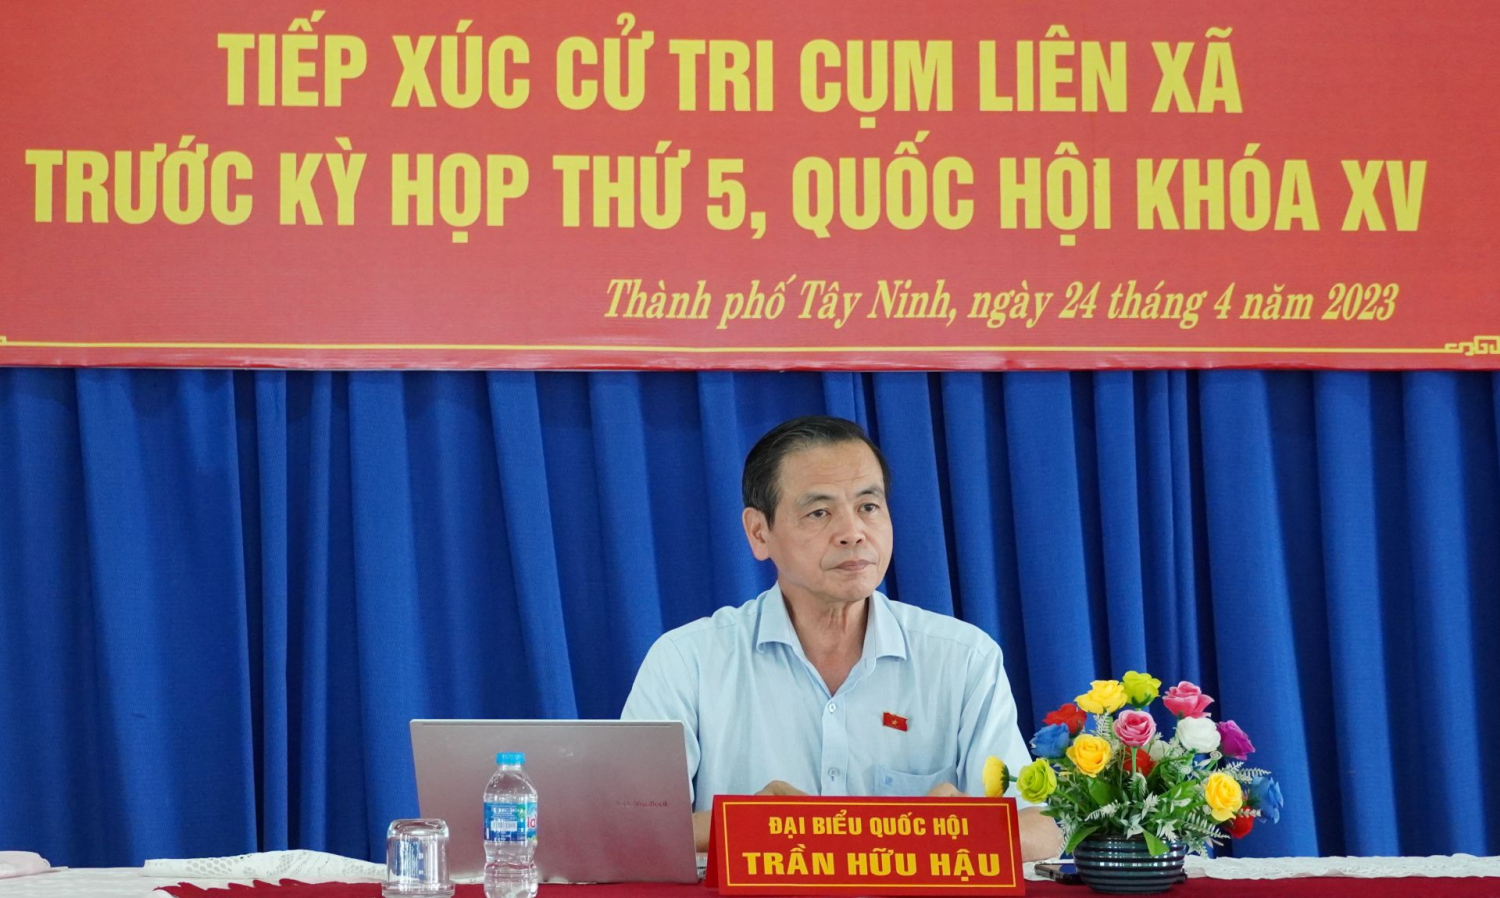 Đại biểu Quốc hội Trần Hữu Hậu tiếp xúc cử tri thành phố Tây Ninh